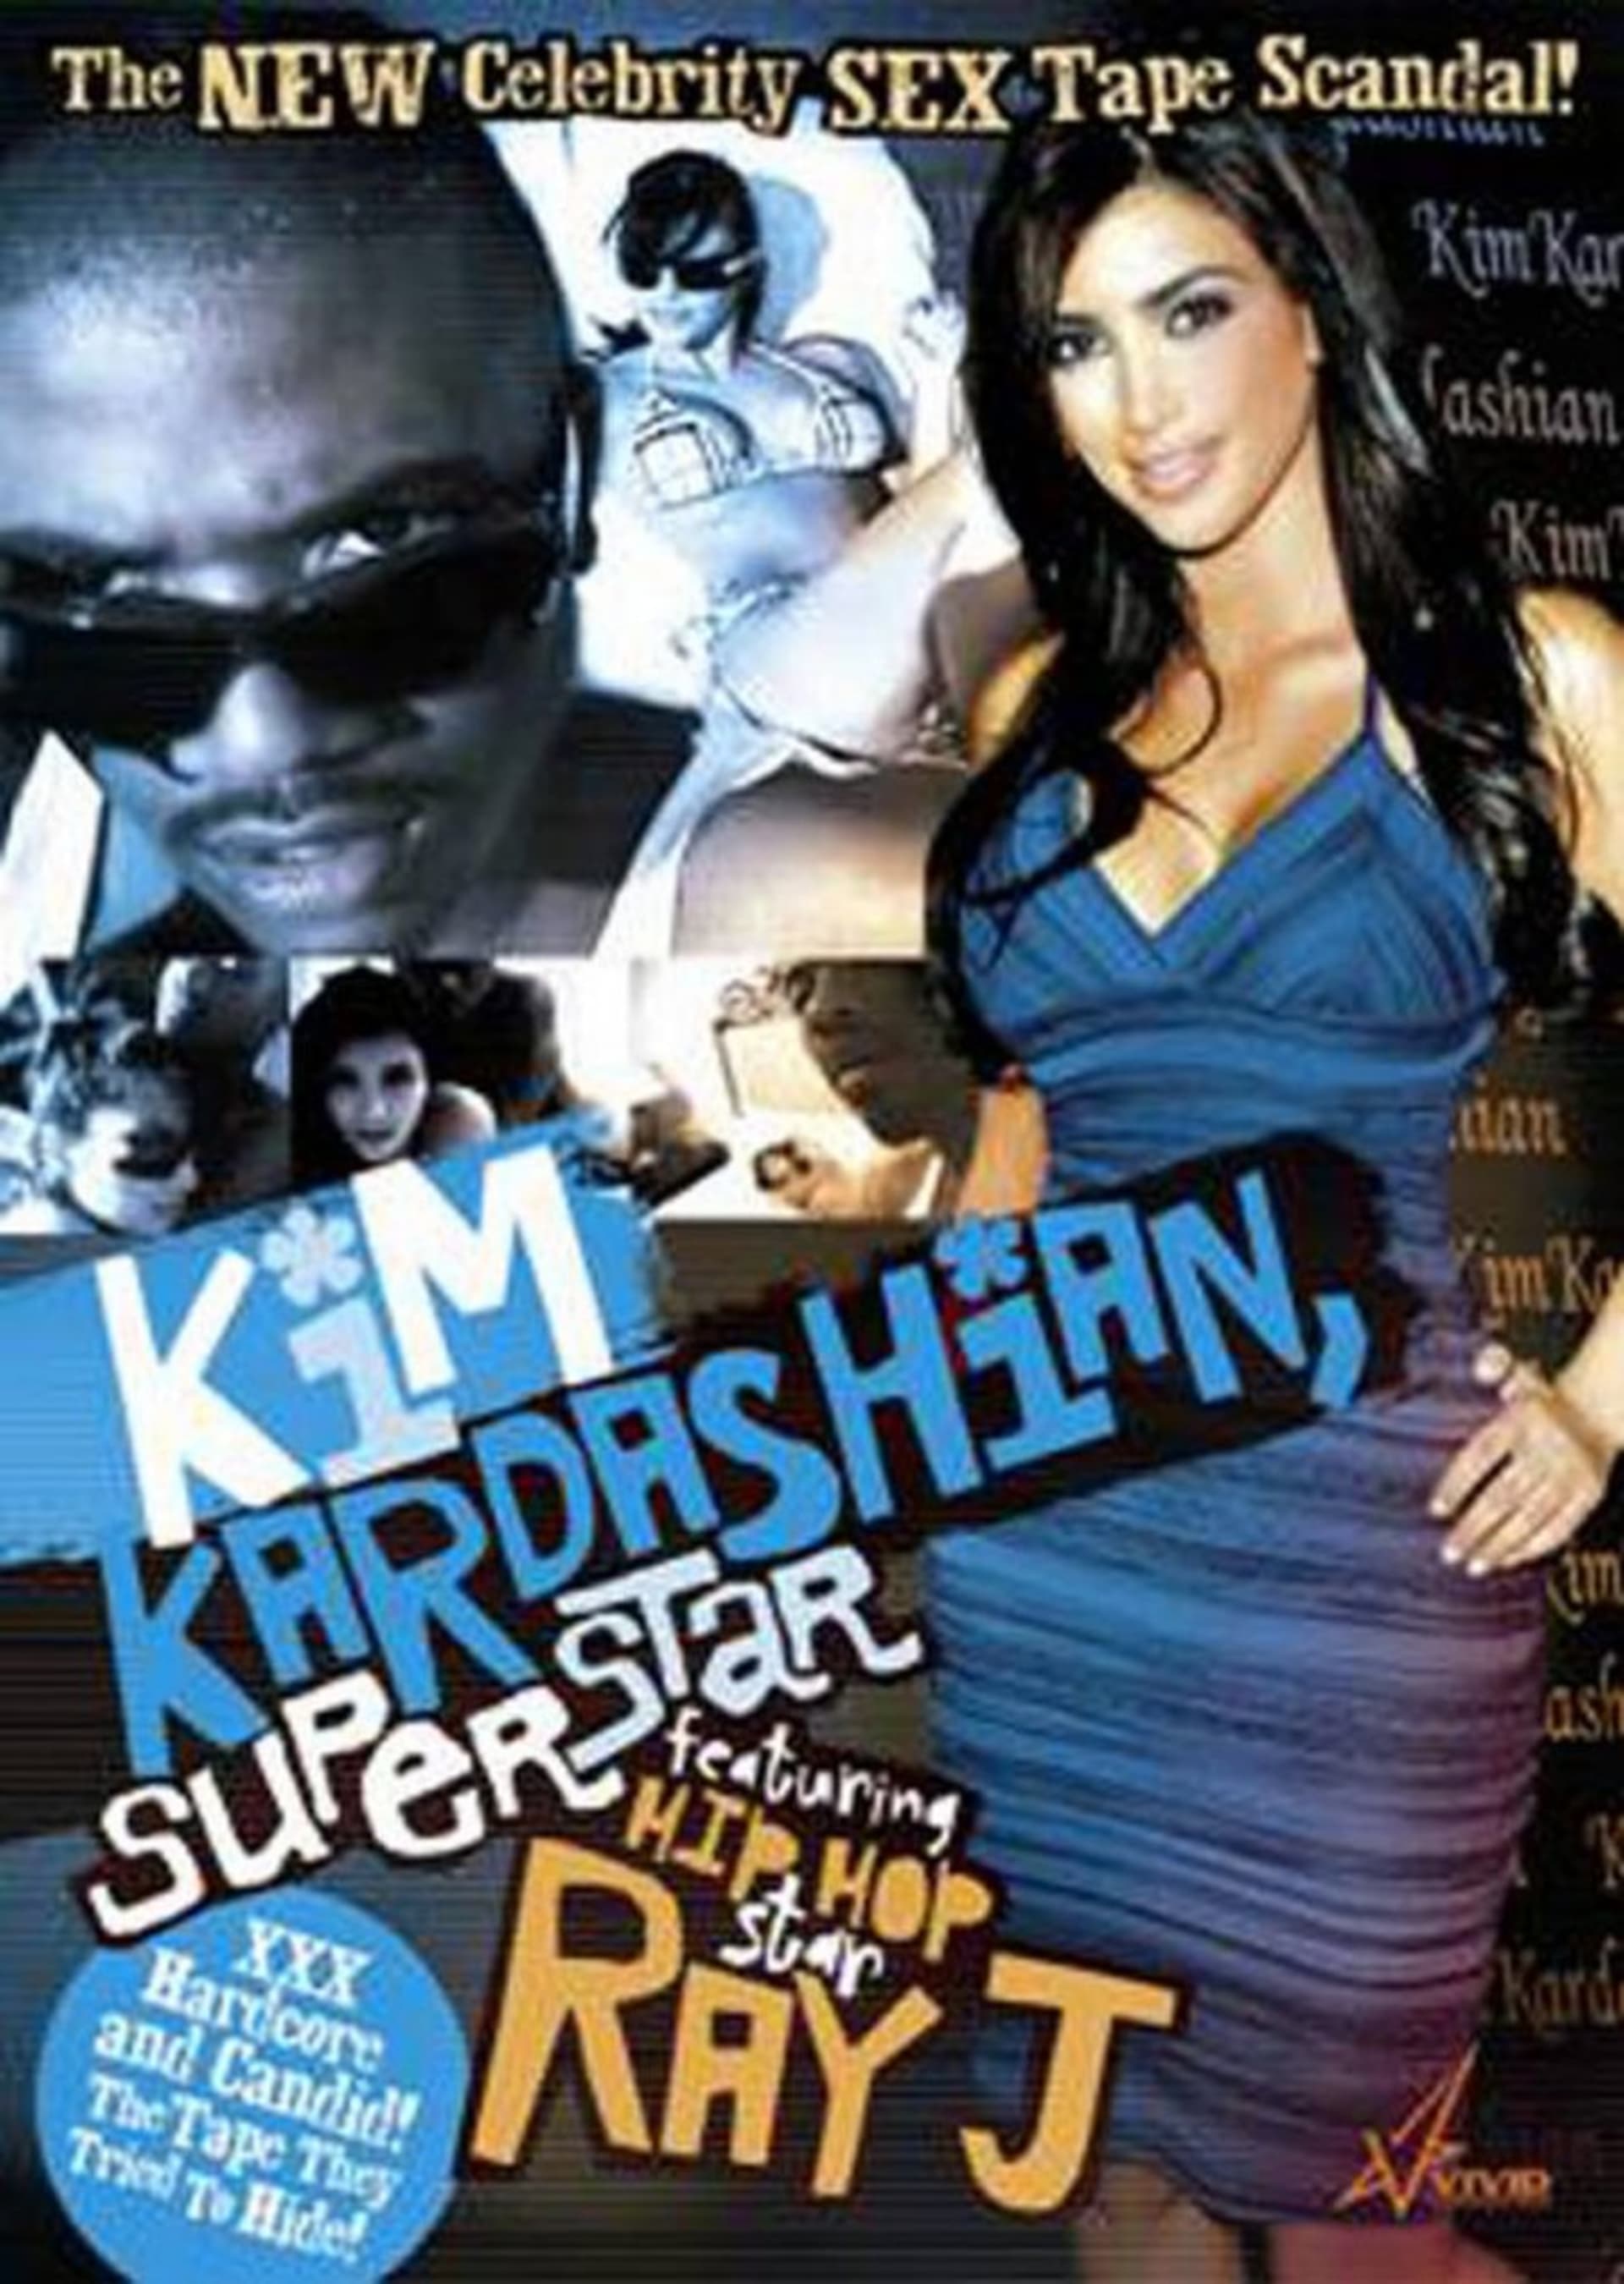 Kim kardashian porn in Johannesburg